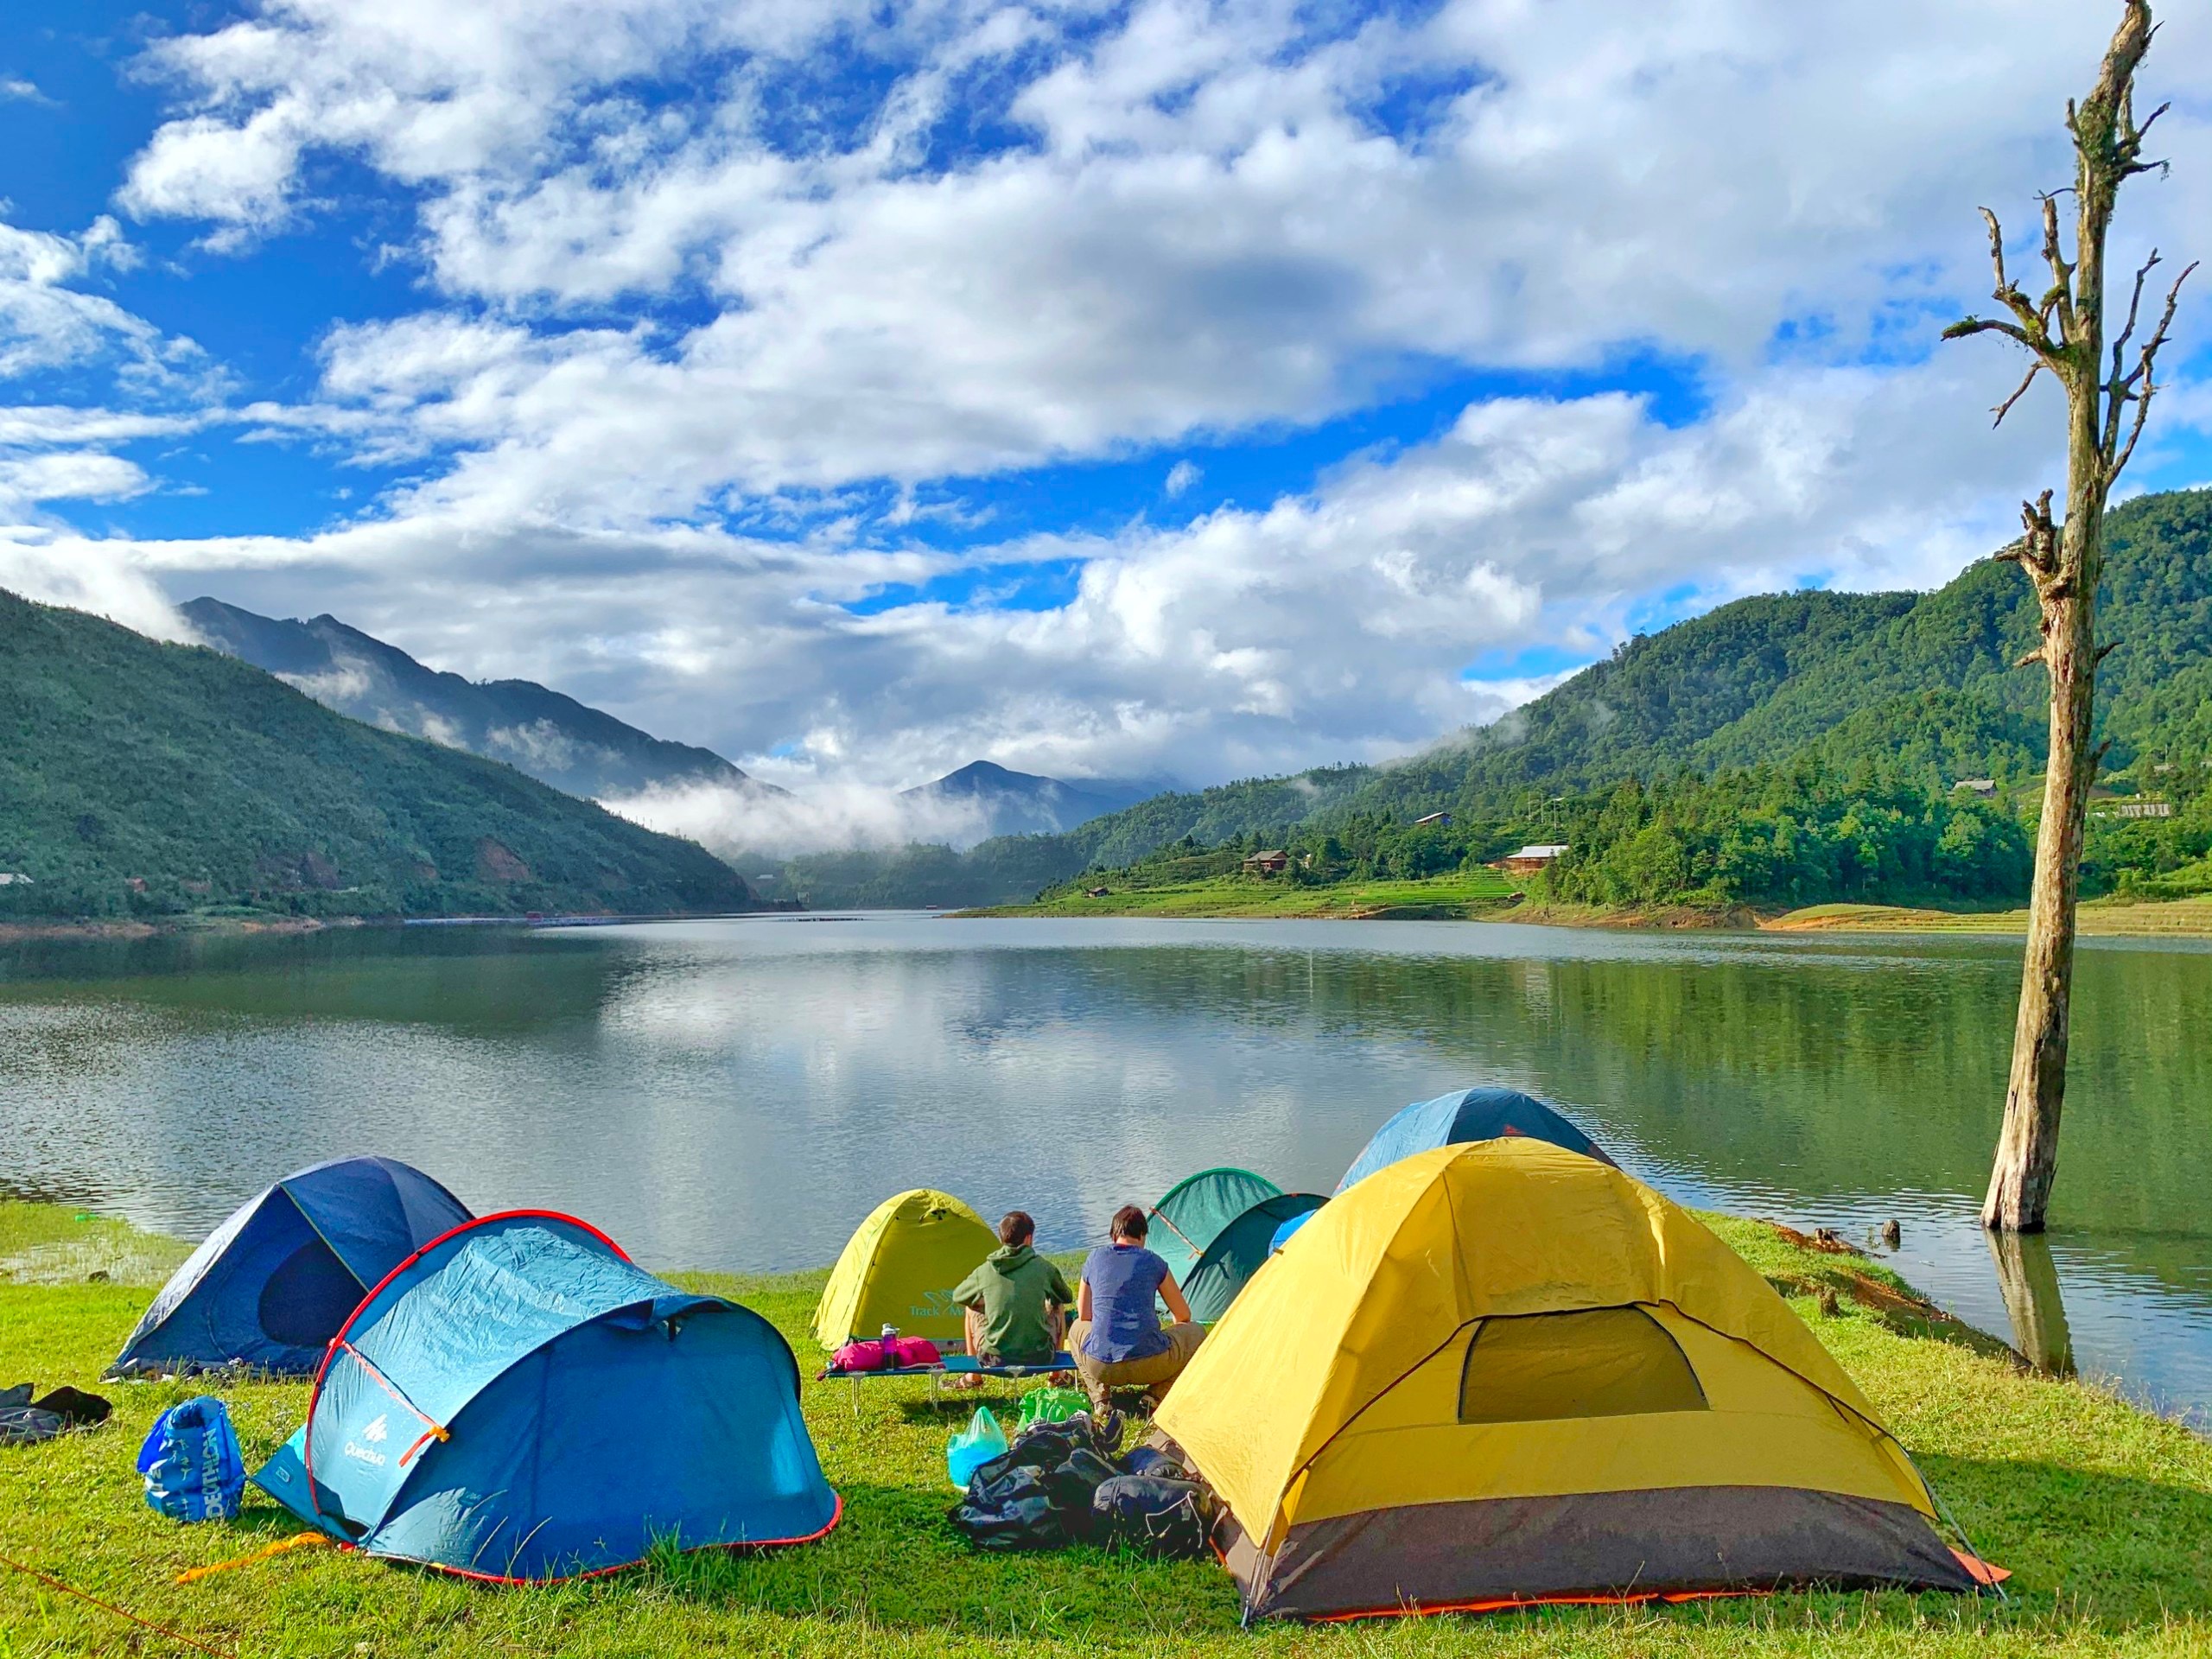 Cắm trại và đón bình minh bên hồ là trải nghiệm không thể quên cho chuyến du lịch Sapa